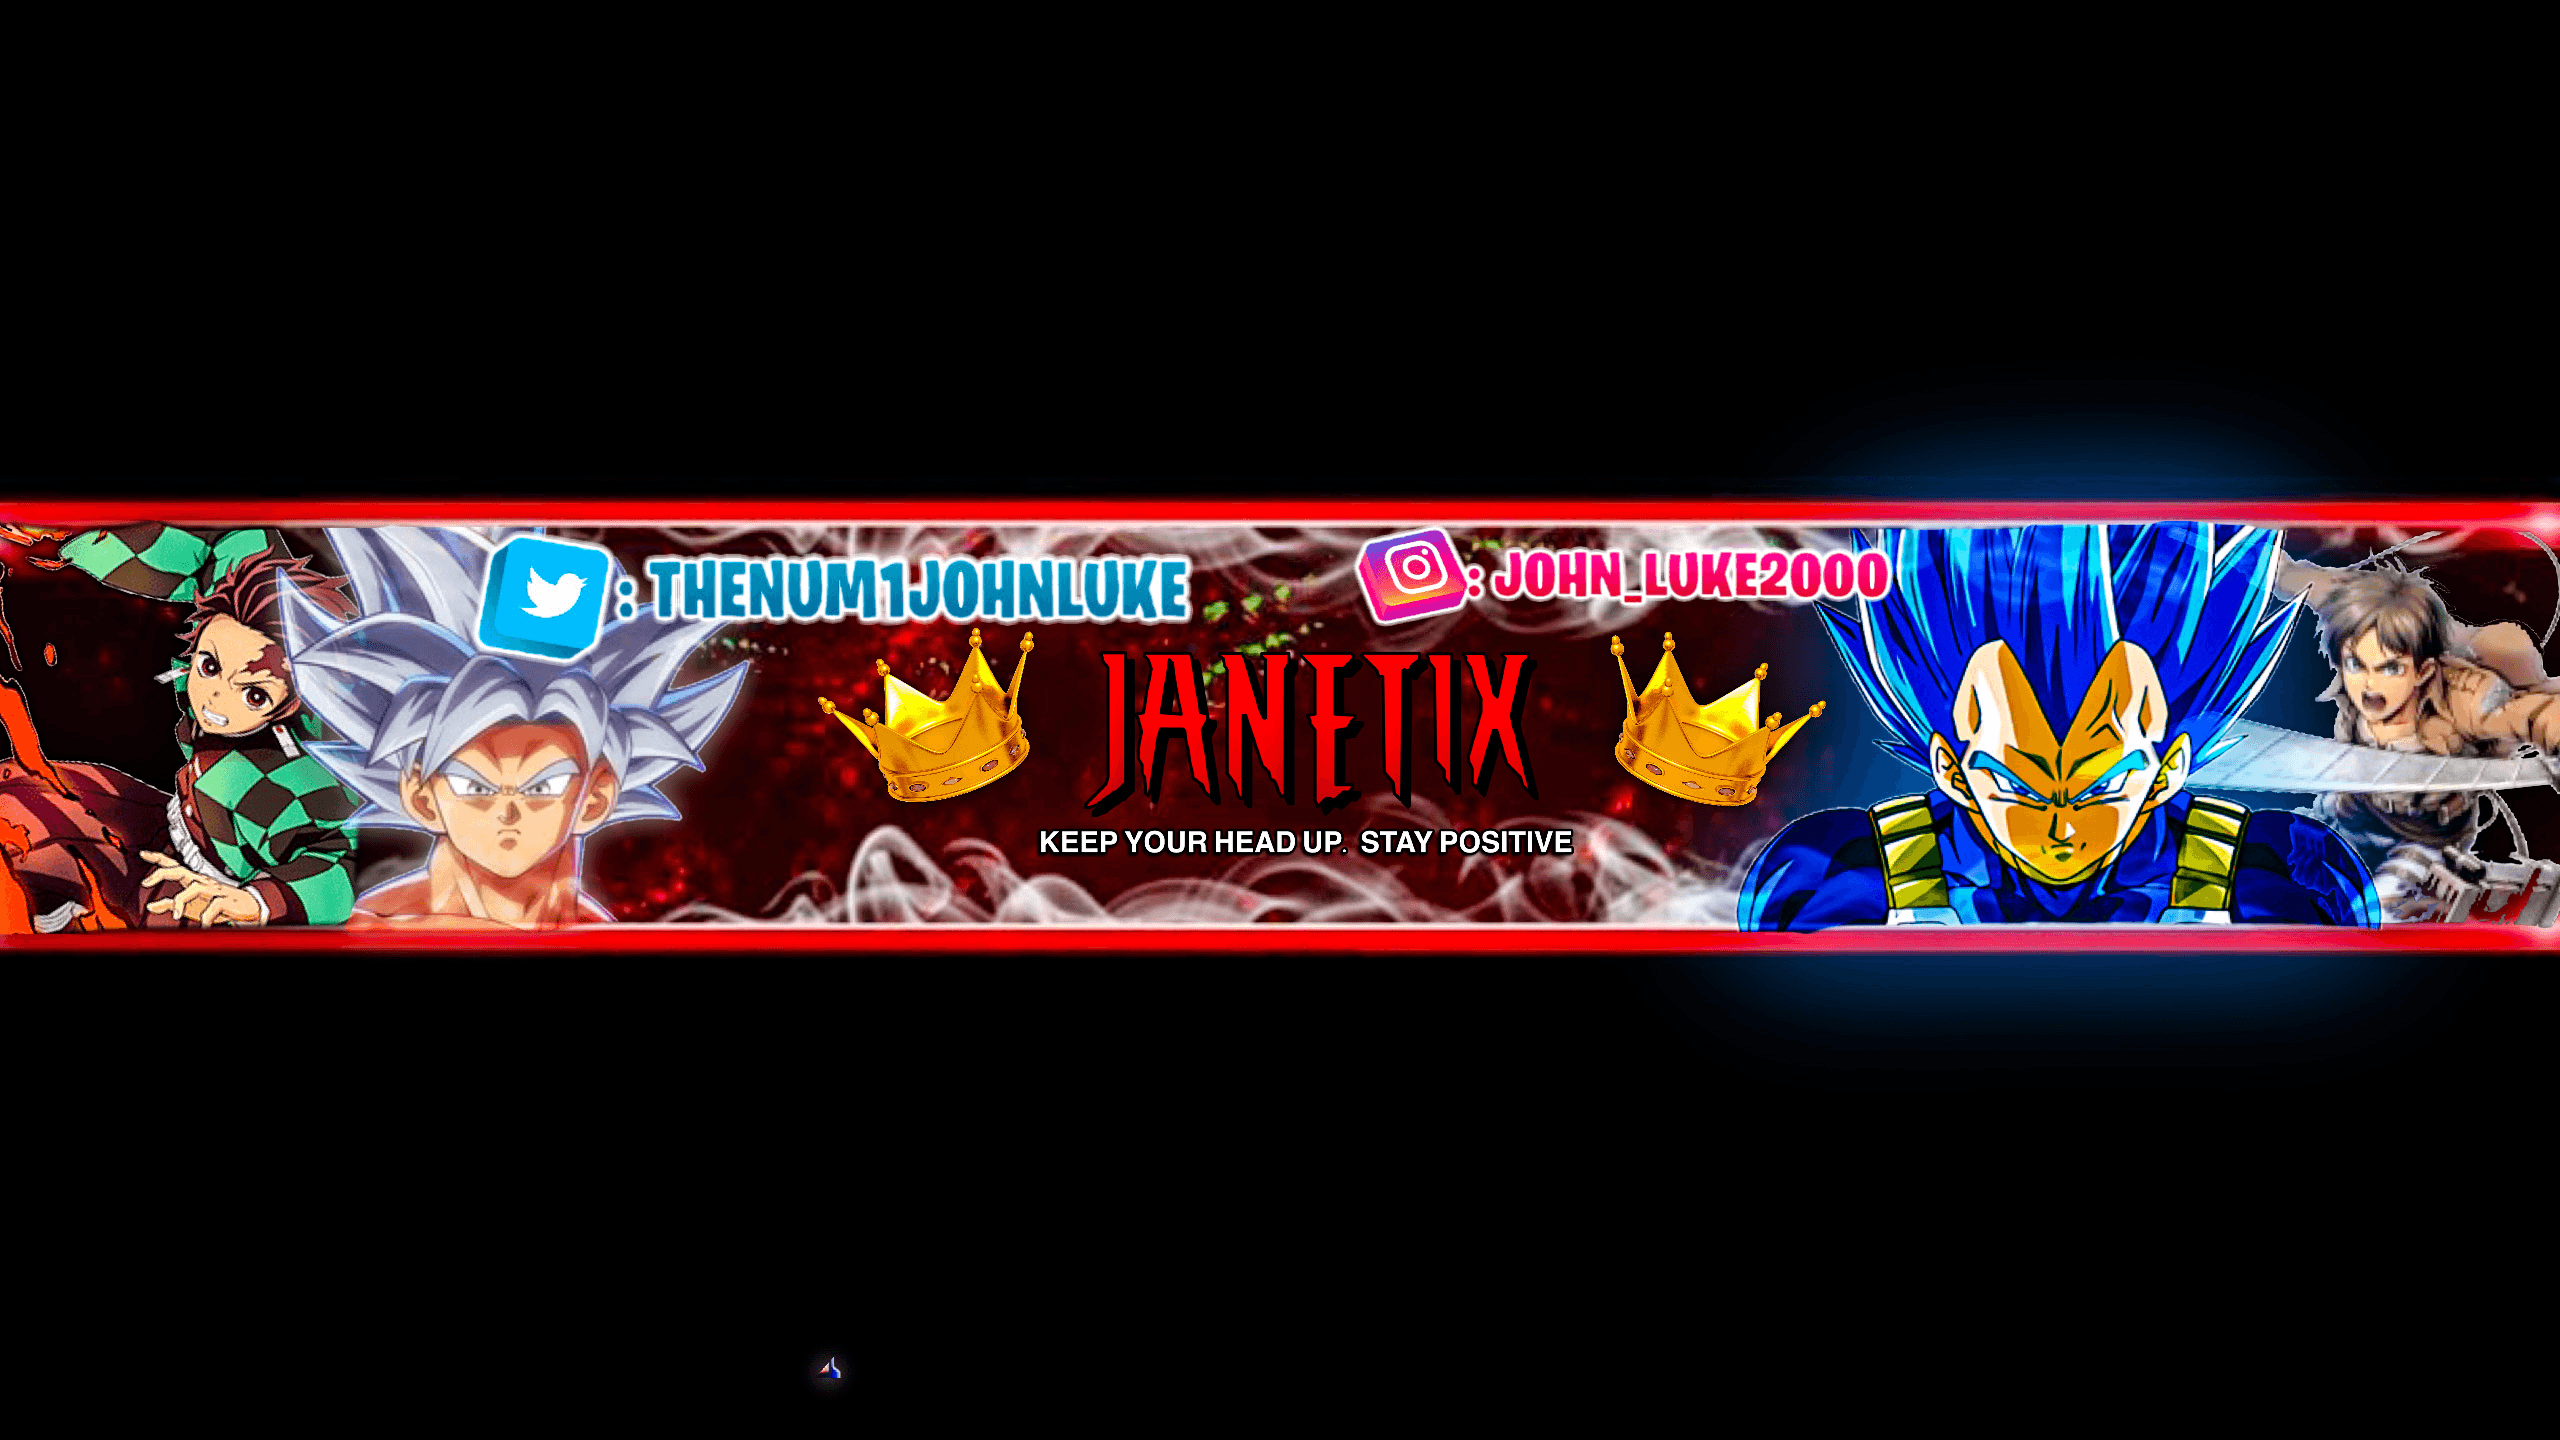 Janetix banner